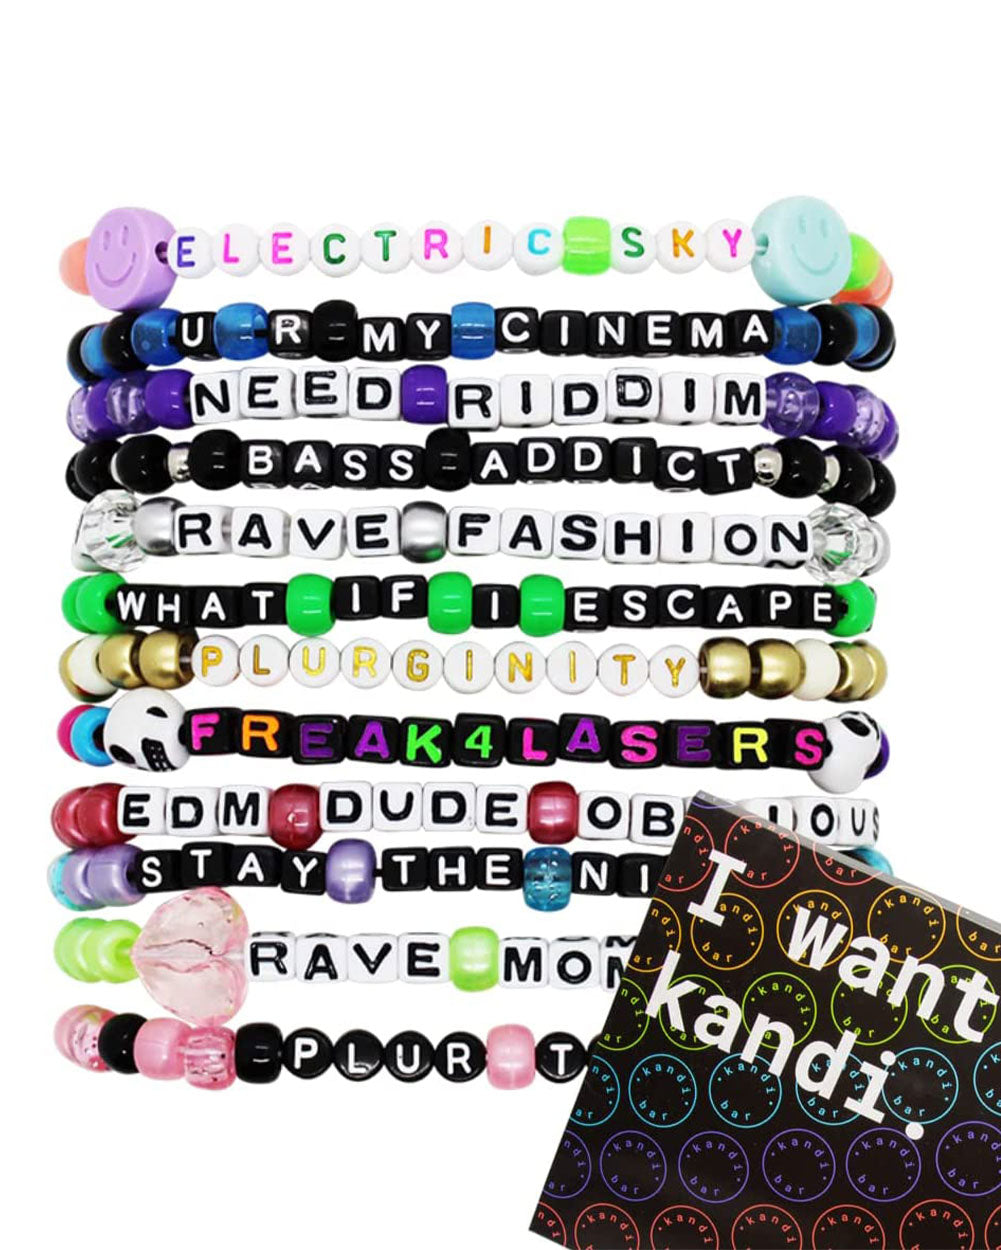 15 Random Kandi Bracelets Kandi Singles, PLUR, Assorted Beaded